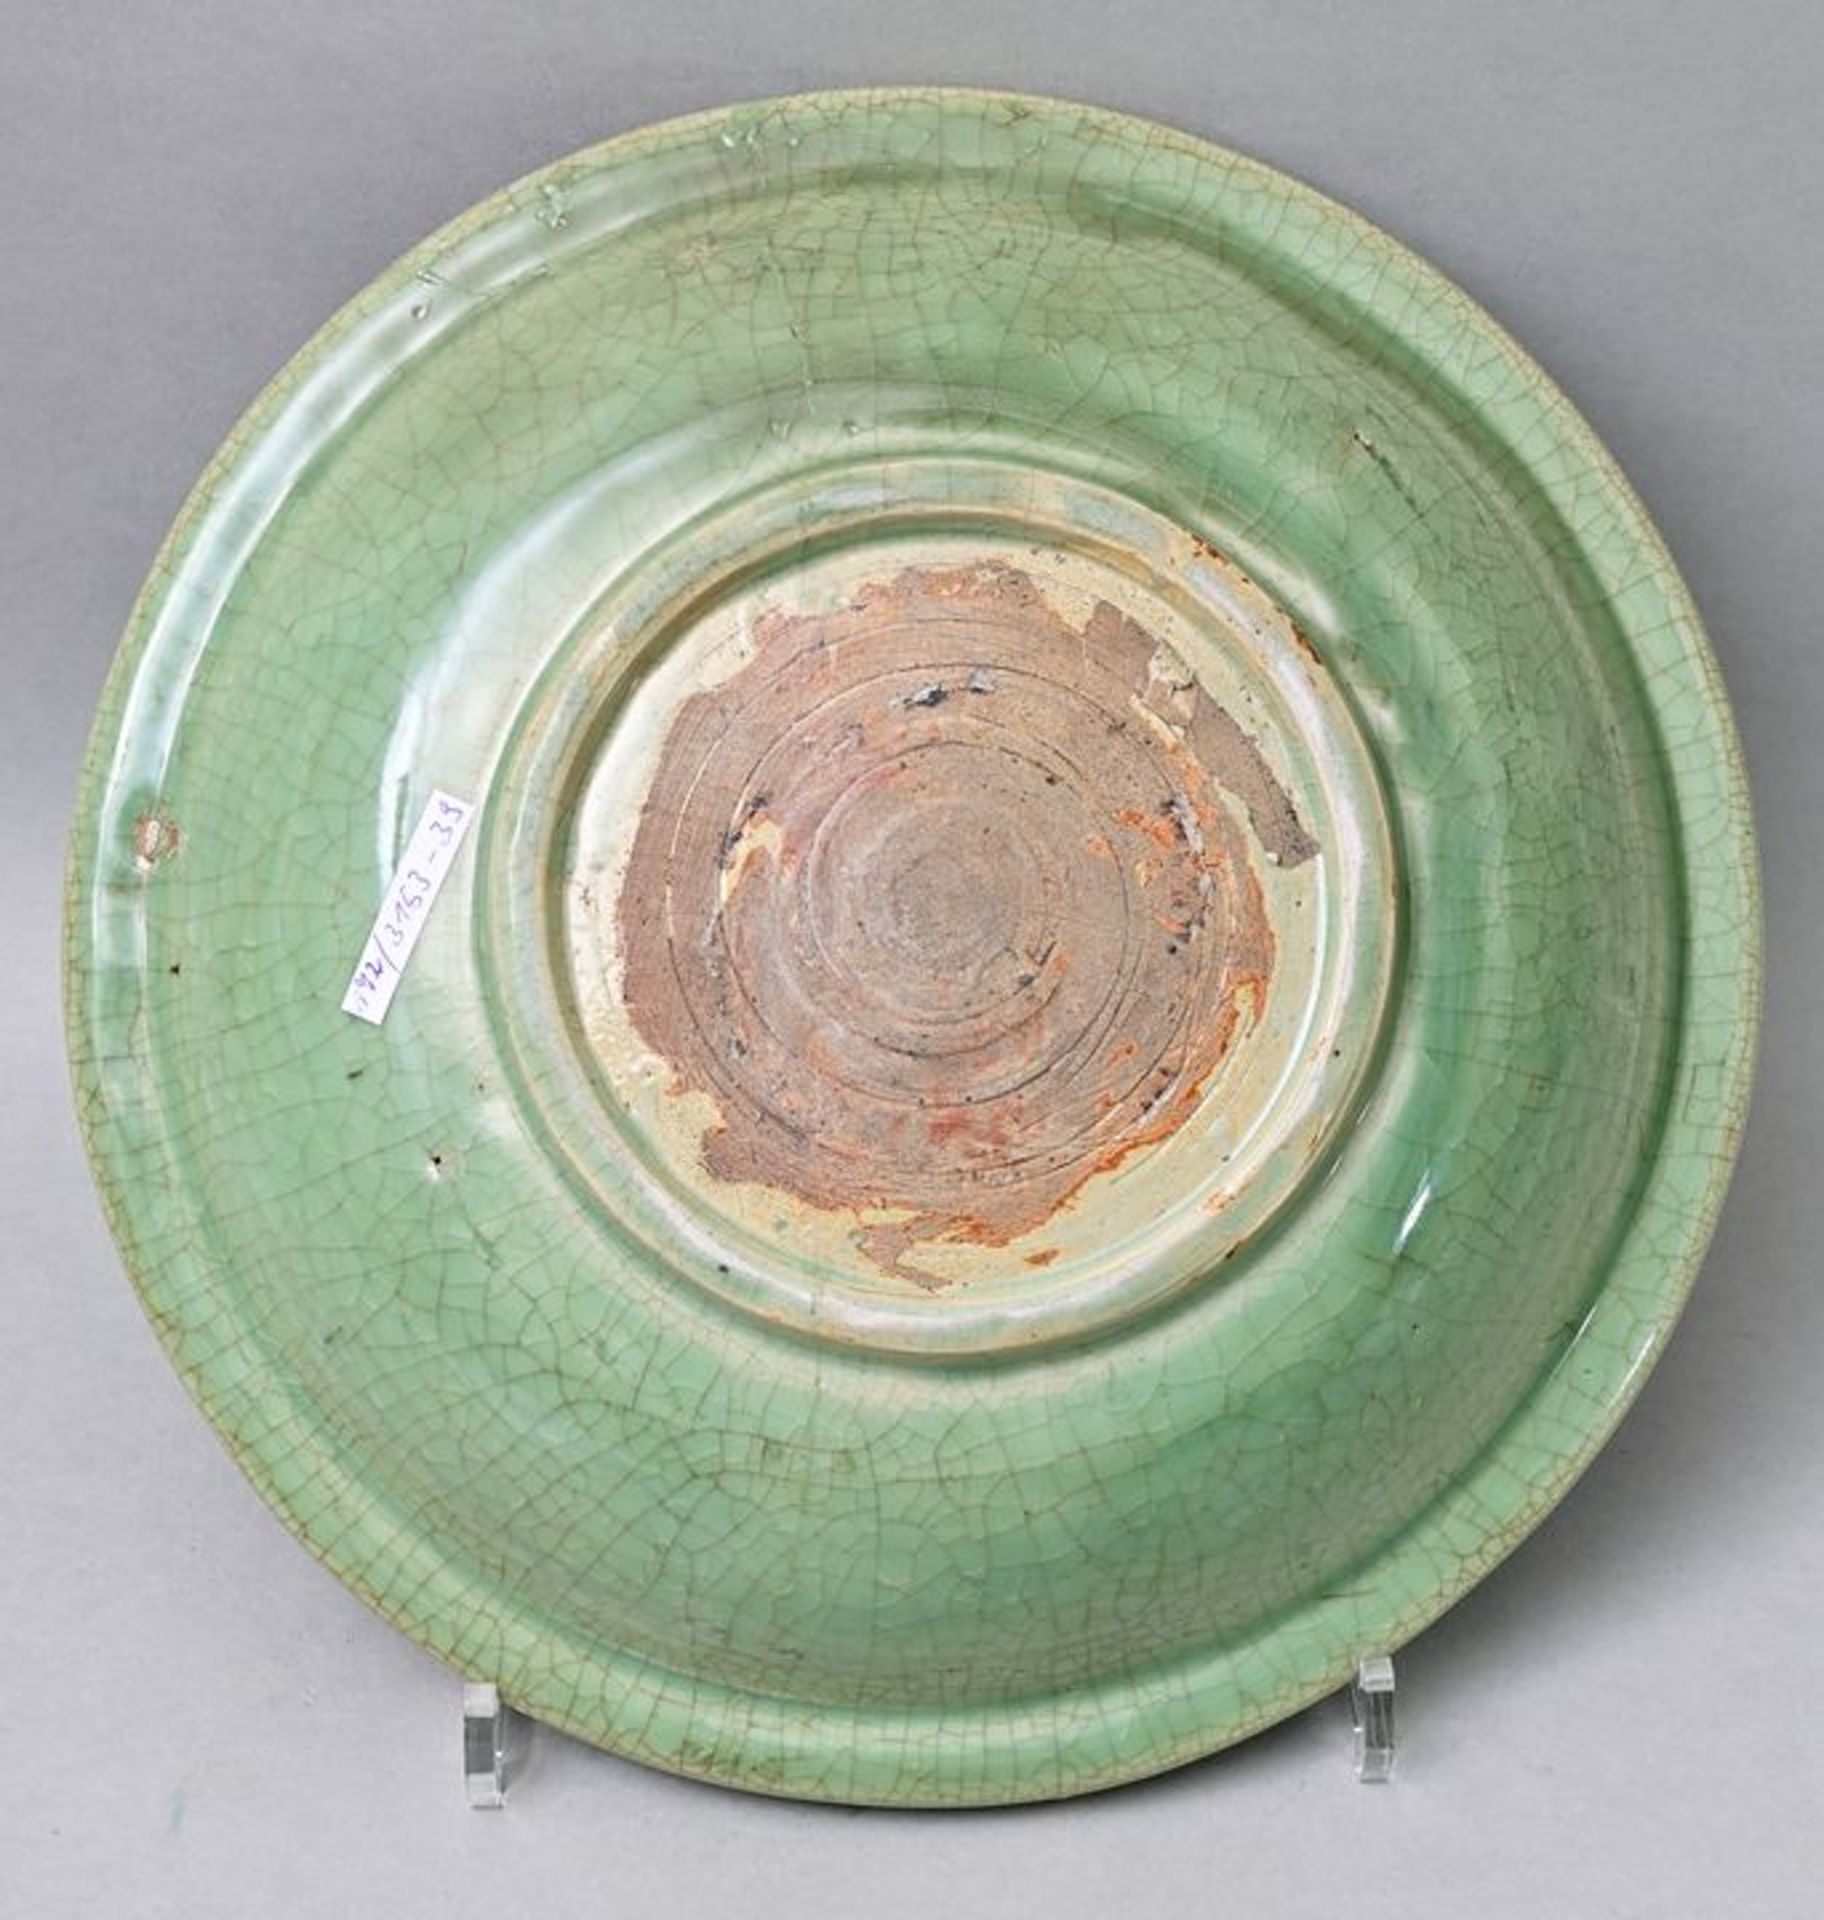 Platte grüne Glasur/ greenware plate - Bild 3 aus 4